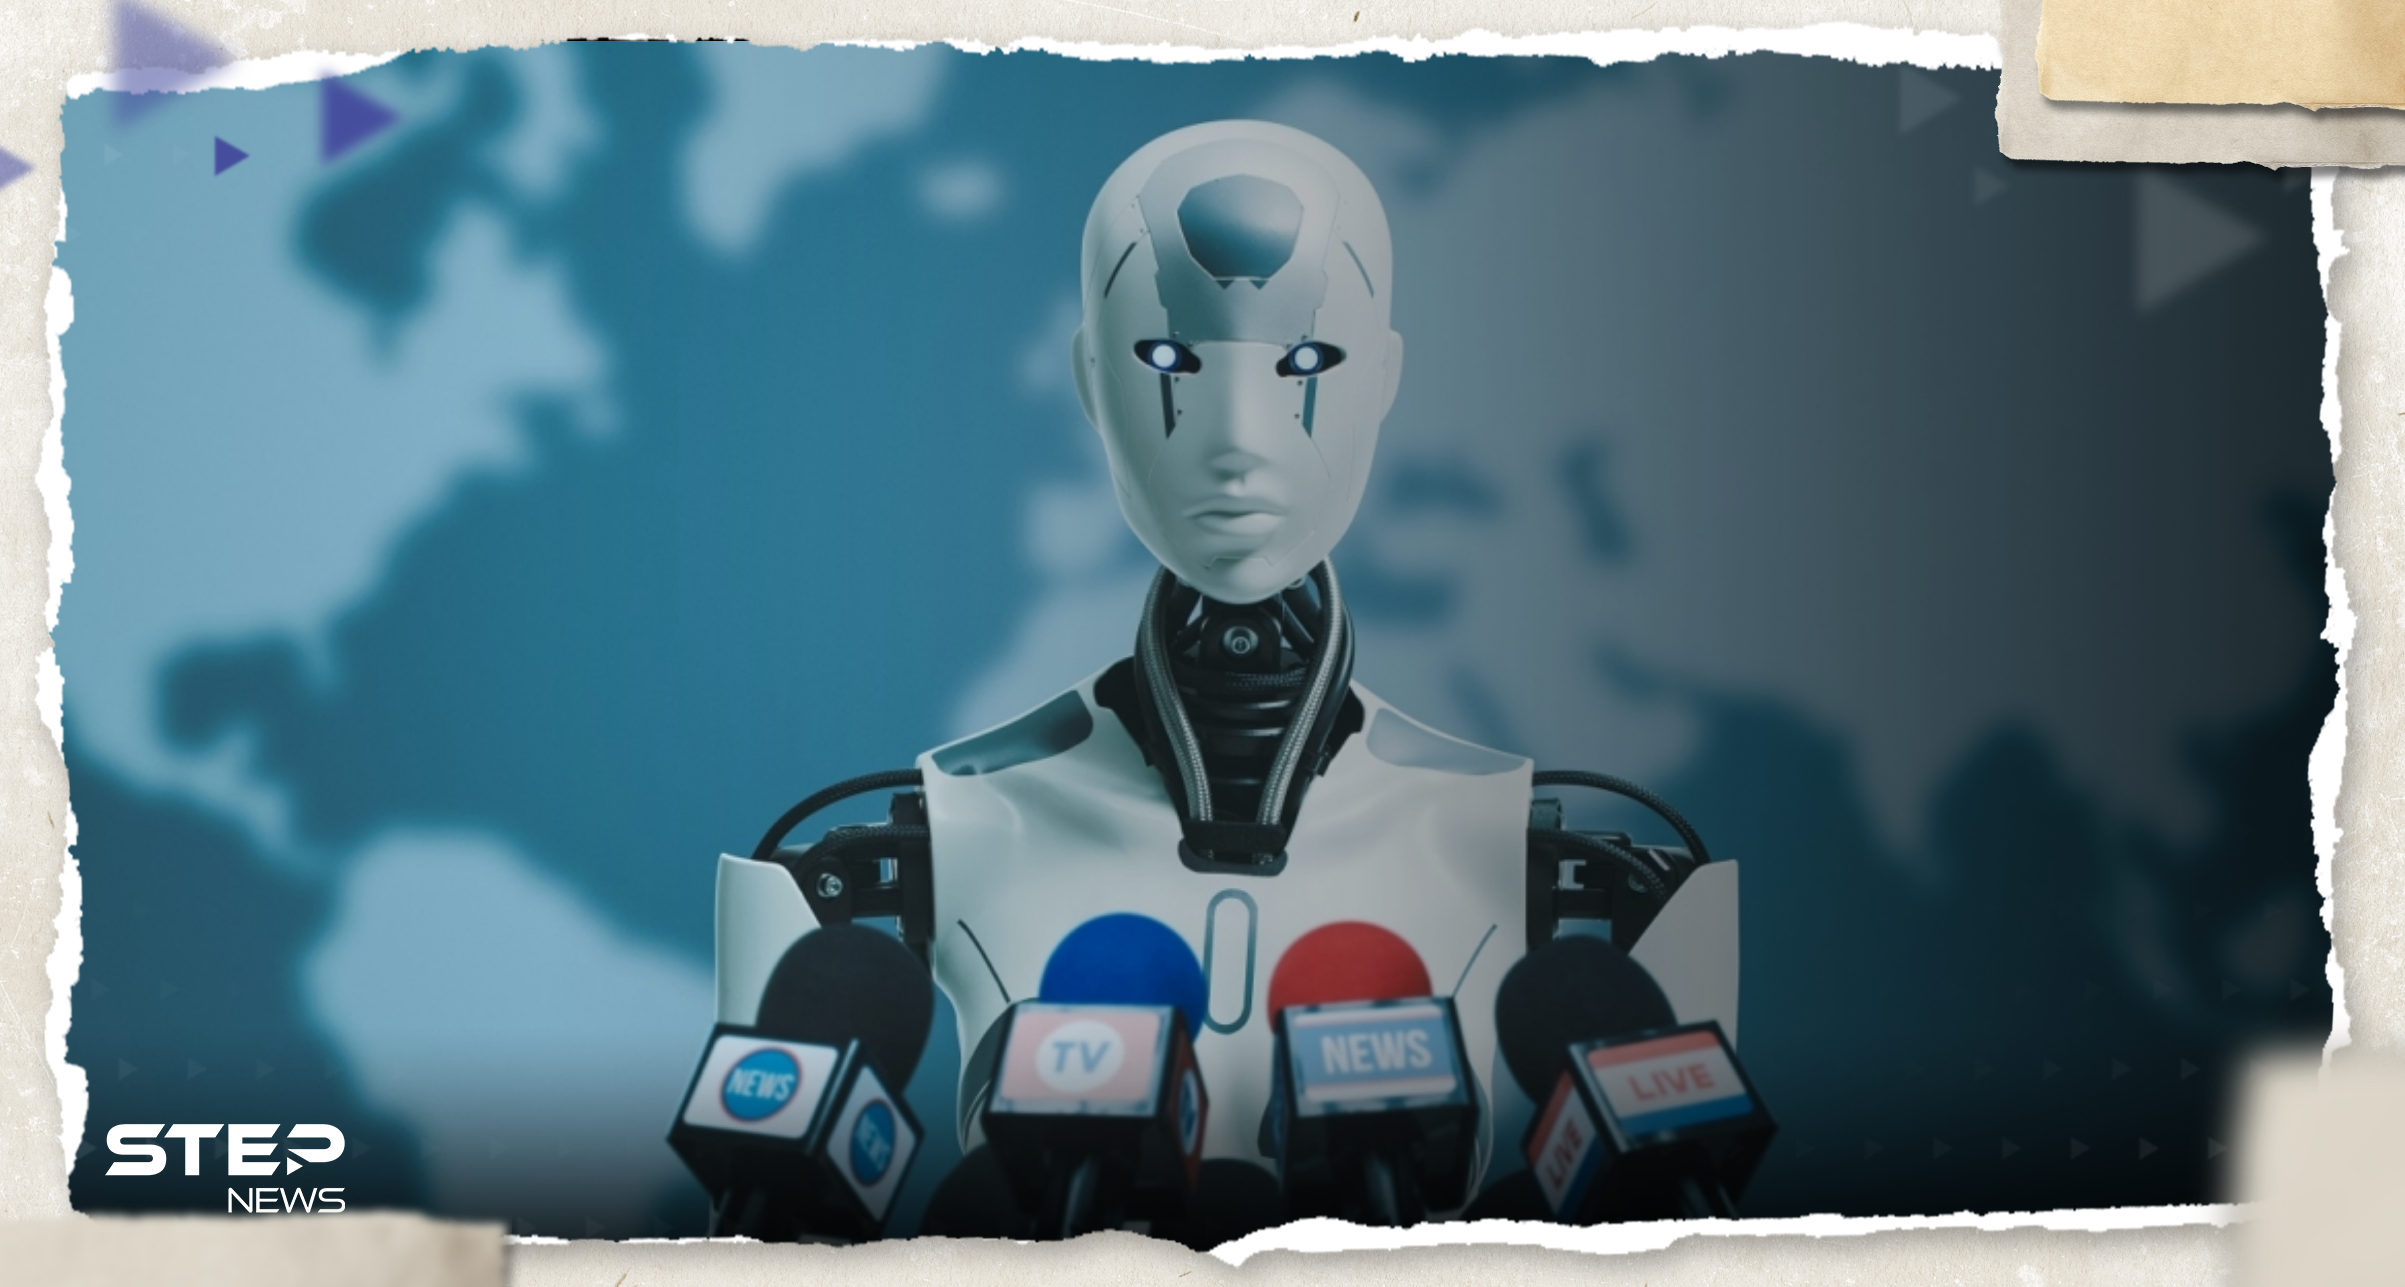 لأول مرّة بالعالم.. روبوتات بالذكاء الاصطناعي تعقد مؤتمراً وتجيب على سؤال "هل ستتمرد على البشر؟"